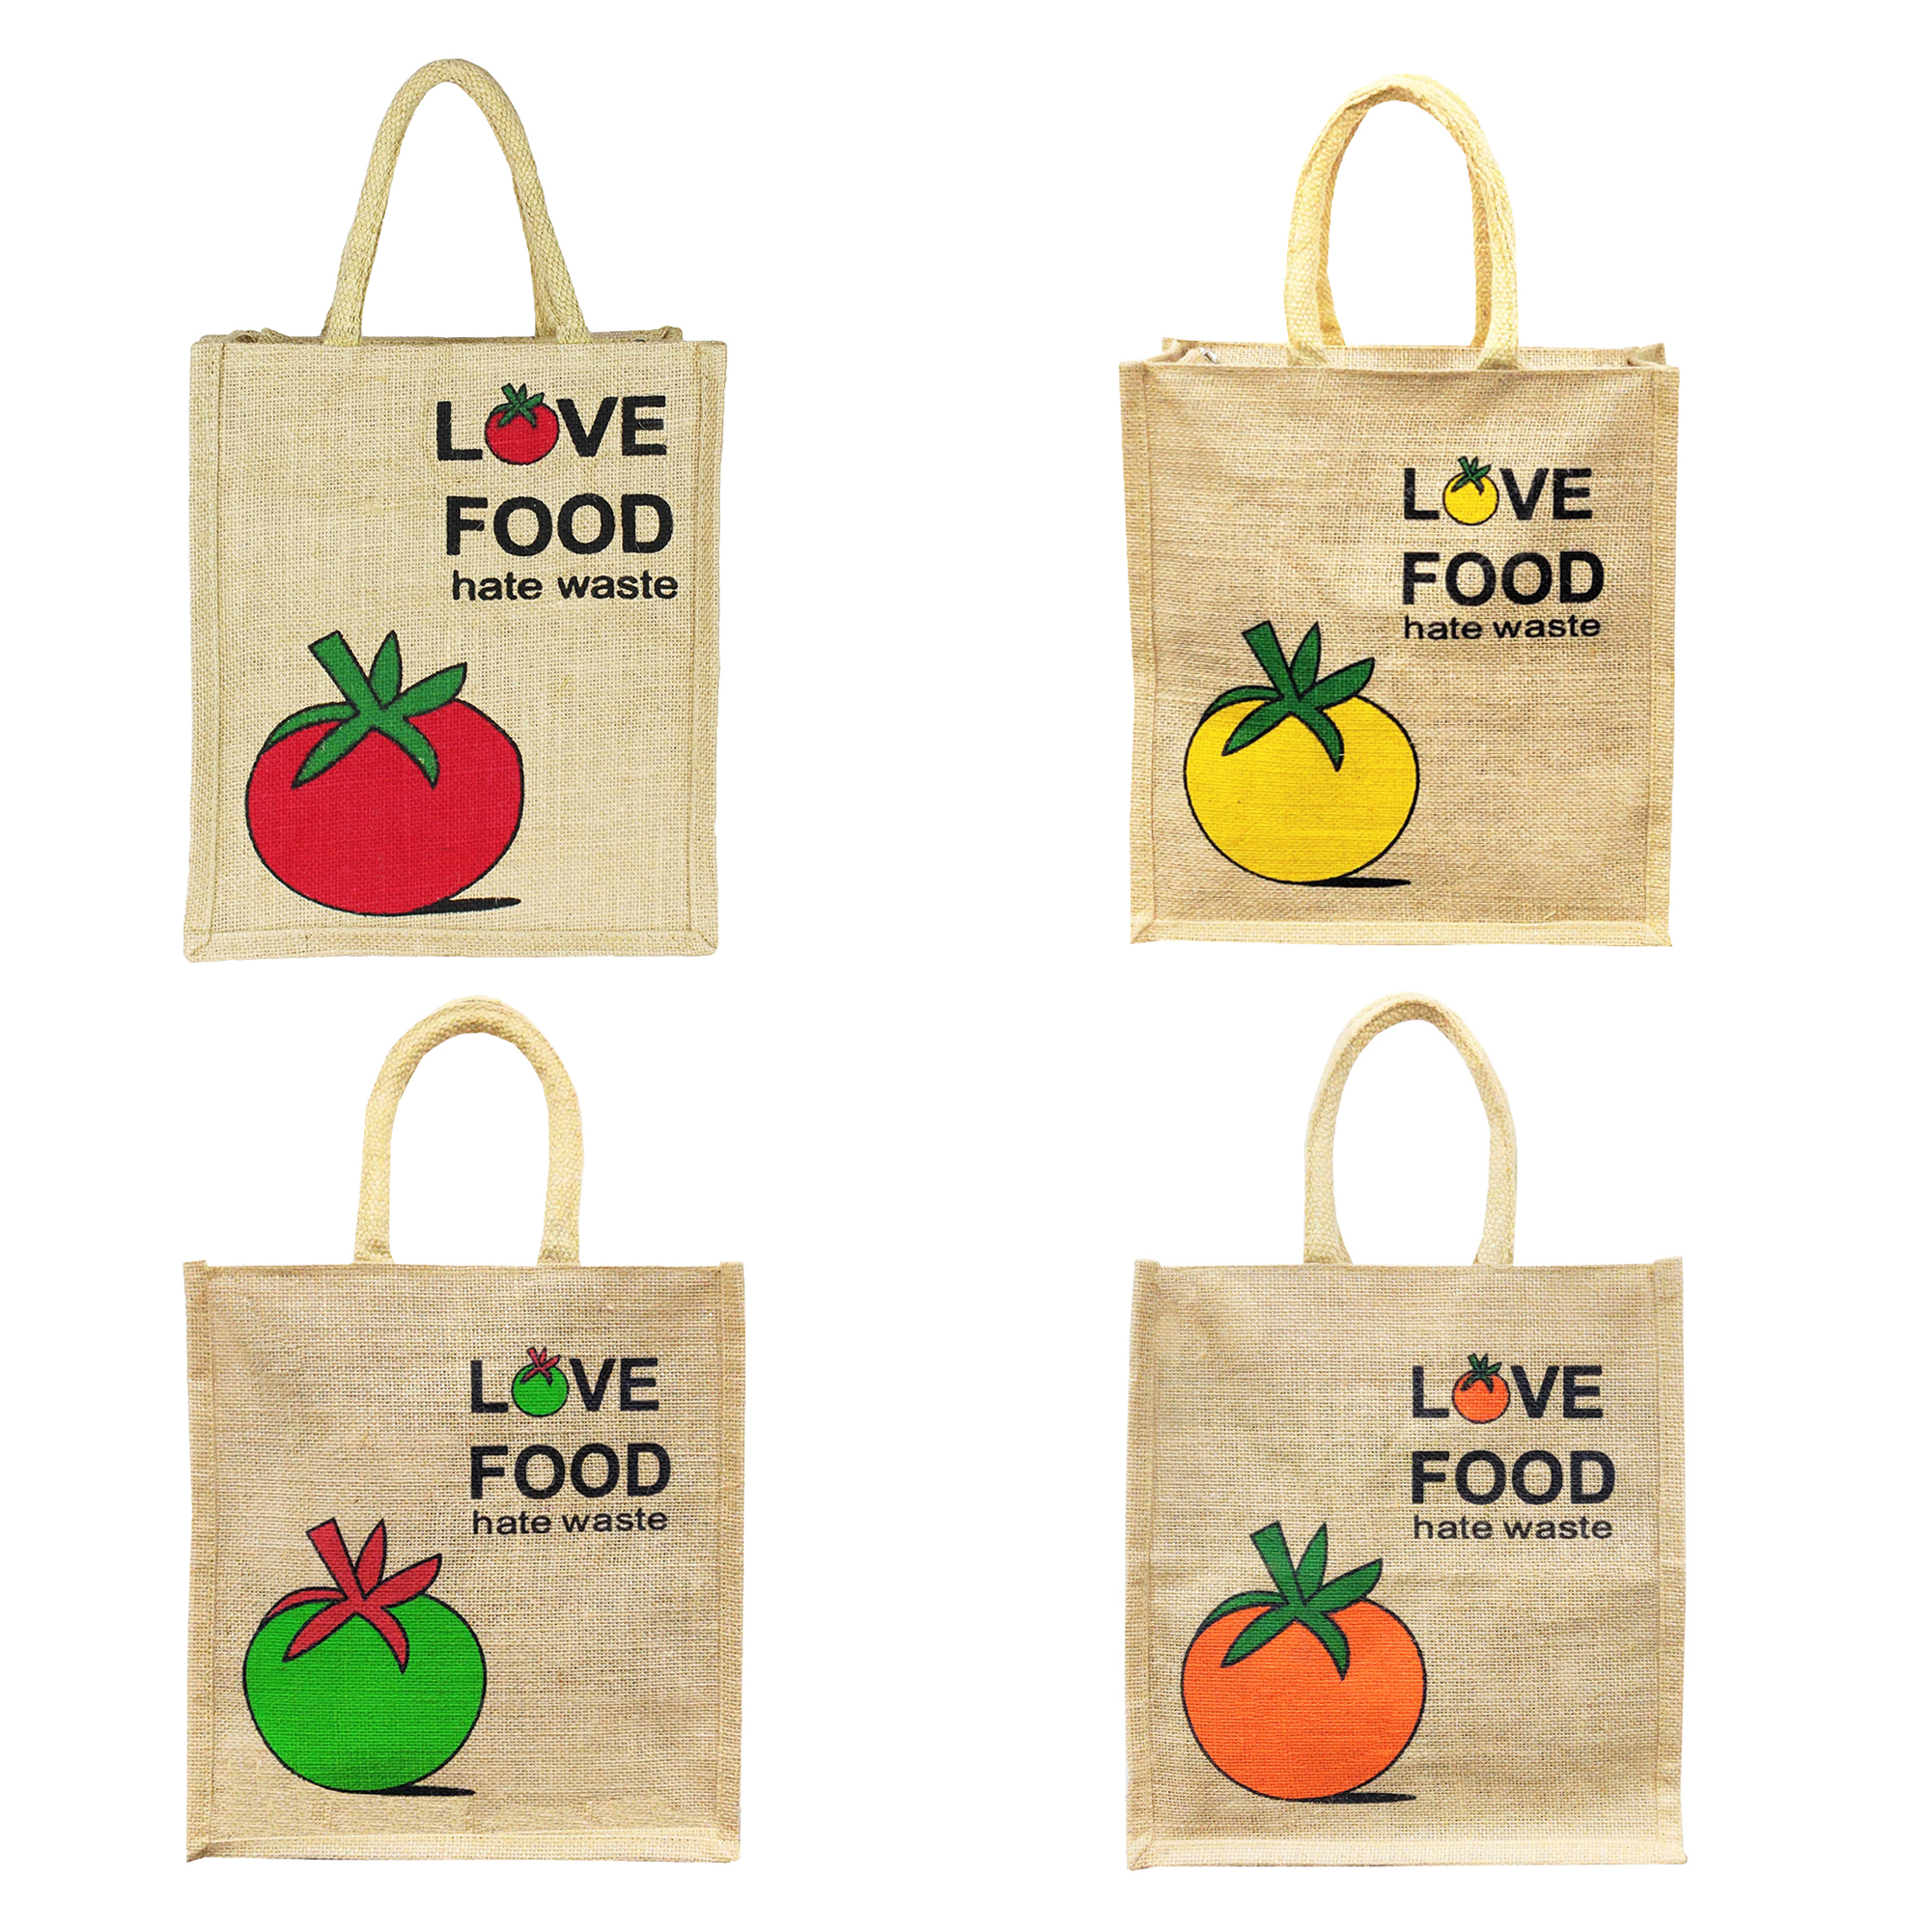 Love Earth - Buy Jute Bags Online in India - Sangrastore.in